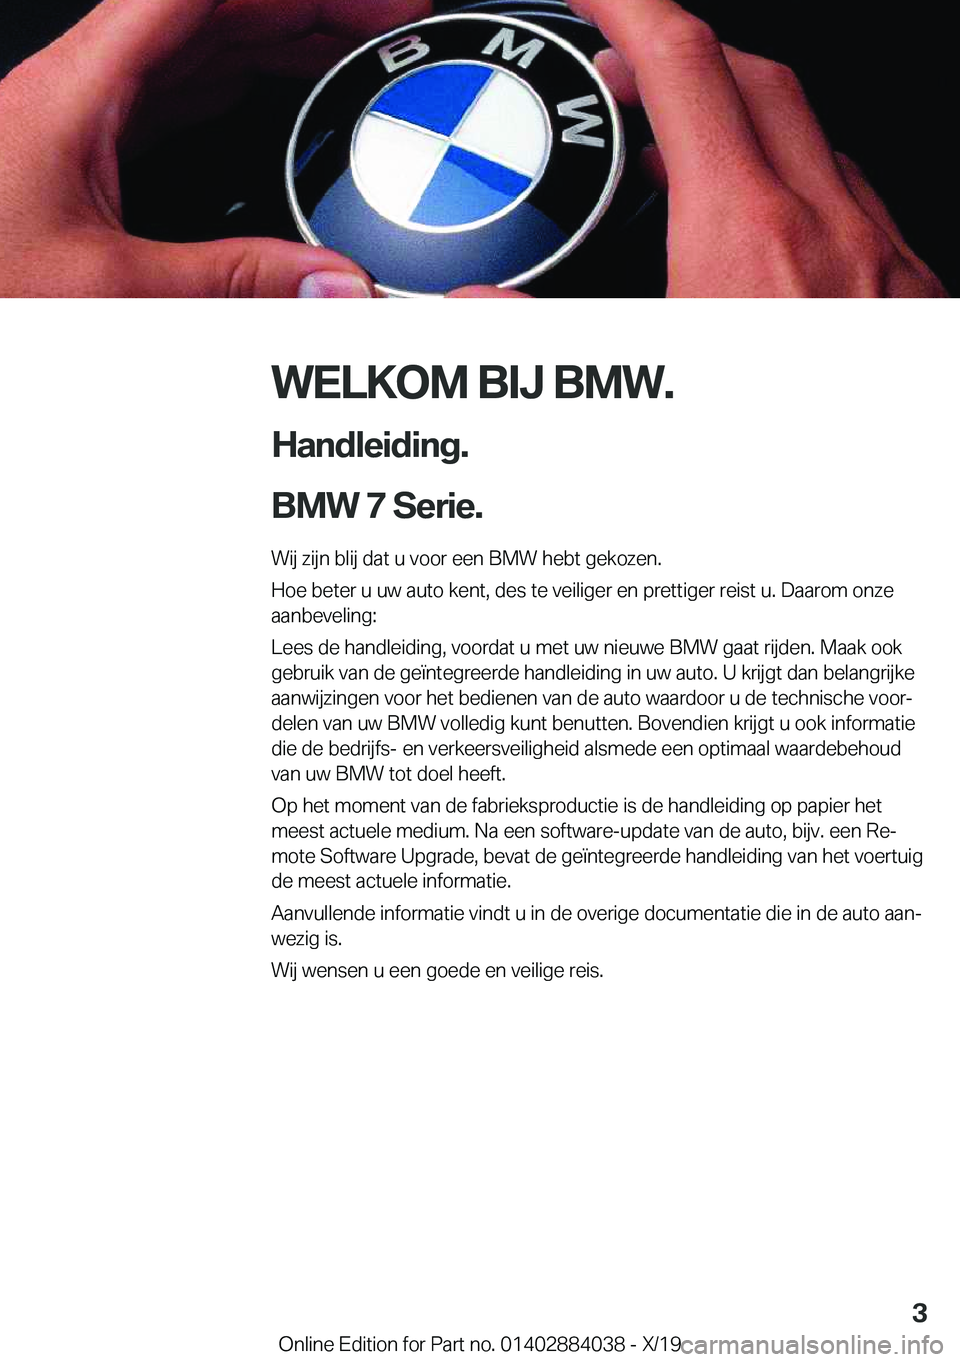 BMW 7 SERIES 2020  Instructieboekjes (in Dutch) �W�E�L�K�O�M��B�I�J��B�M�W�.
�H�a�n�d�l�e�i�d�i�n�g�.
�B�M�W��7��S�e�r�i�e�. �W�i�j��z�i�j�n��b�l�i�j��d�a�t��u��v�o�o�r��e�e�n��B�M�W��h�e�b�t��g�e�k�o�z�e�n�.
�H�o�e��b�e�t�e�r��u��u